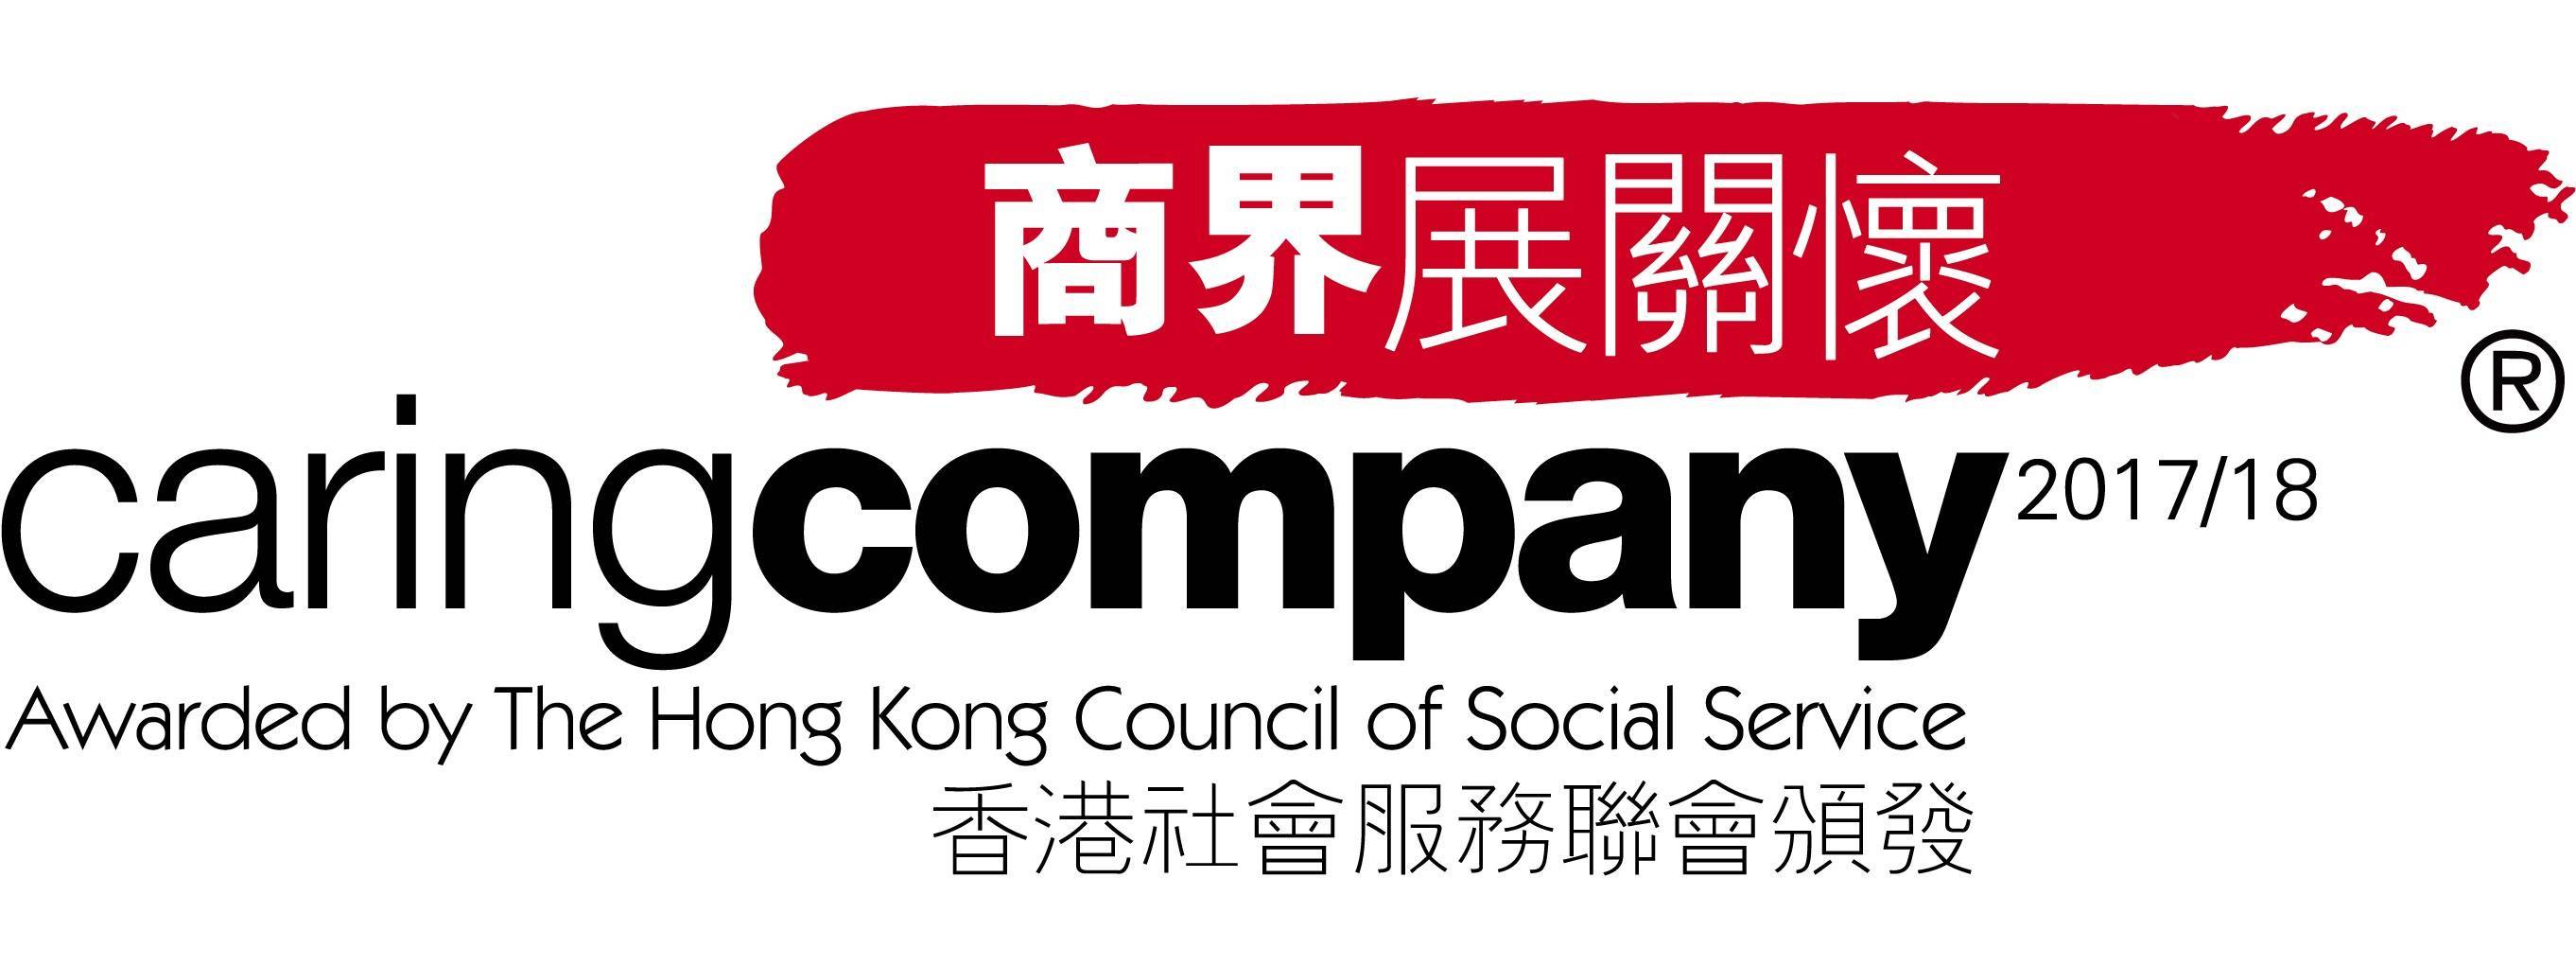 Hong Kong Council of Social Service’s 2016/2018 Caring Company Logo